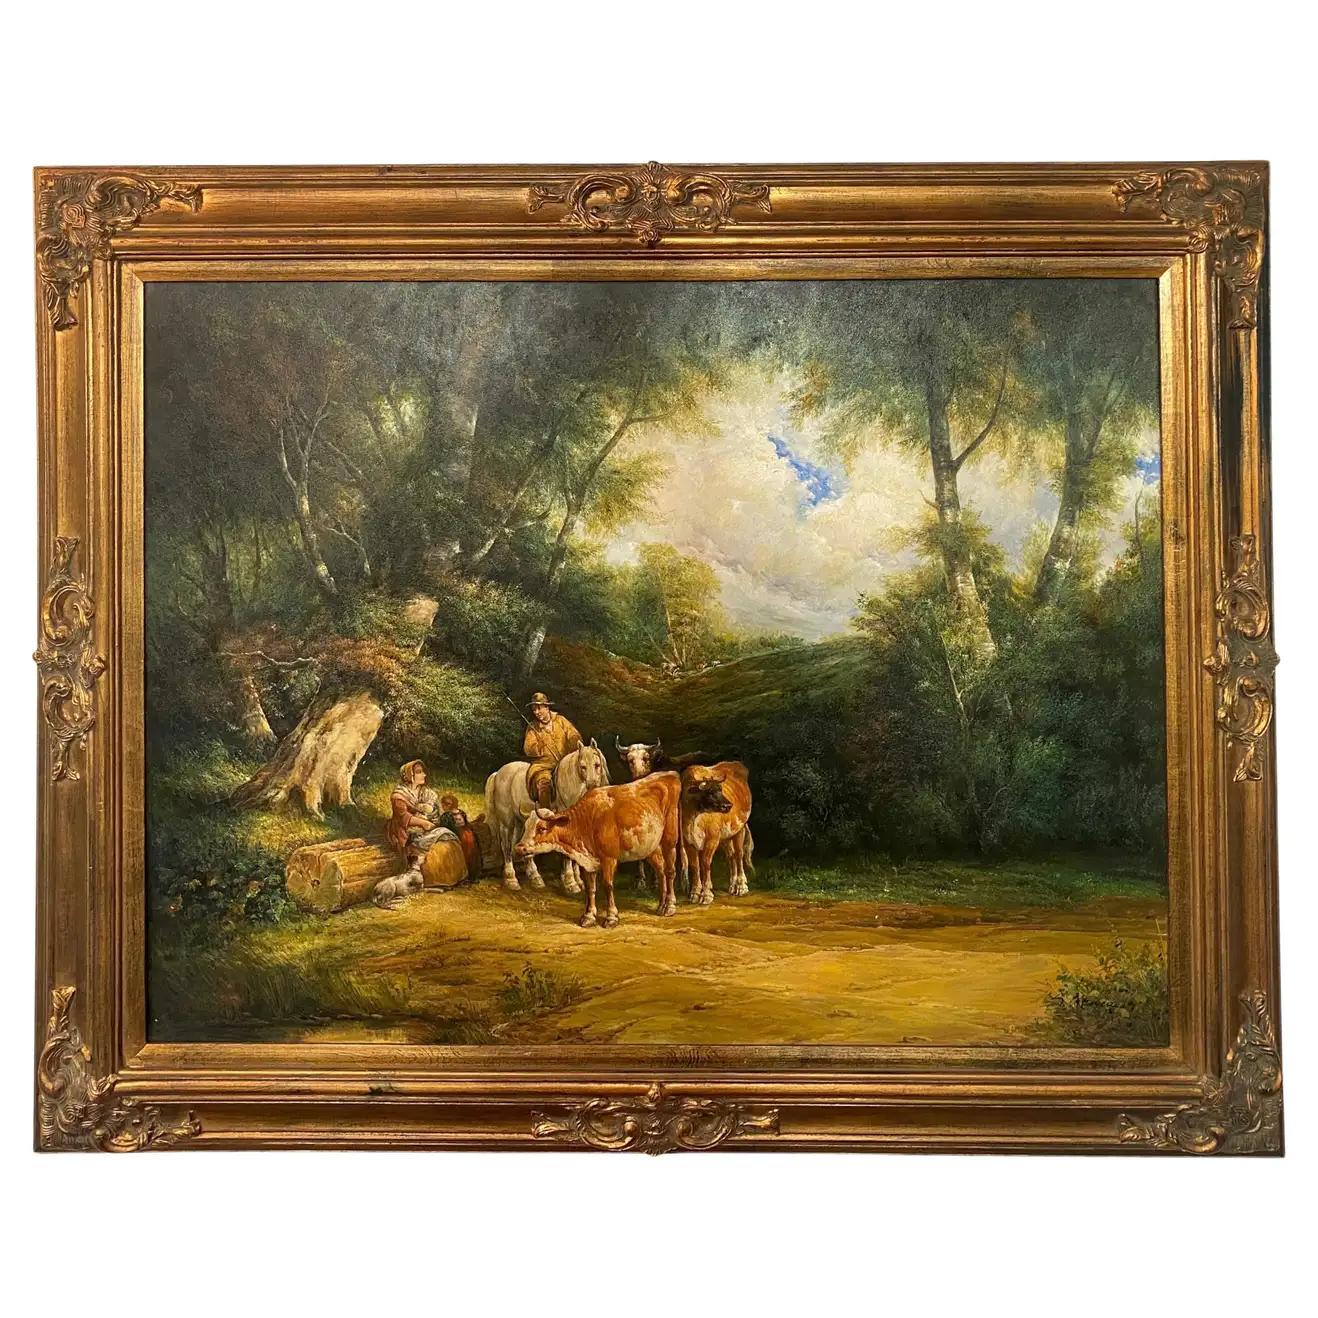 Landscape Painting Julius Paul Junghanns - Grande peinture impressionniste à l'huile sur toile d'un fermier avec du bétail, encadrée